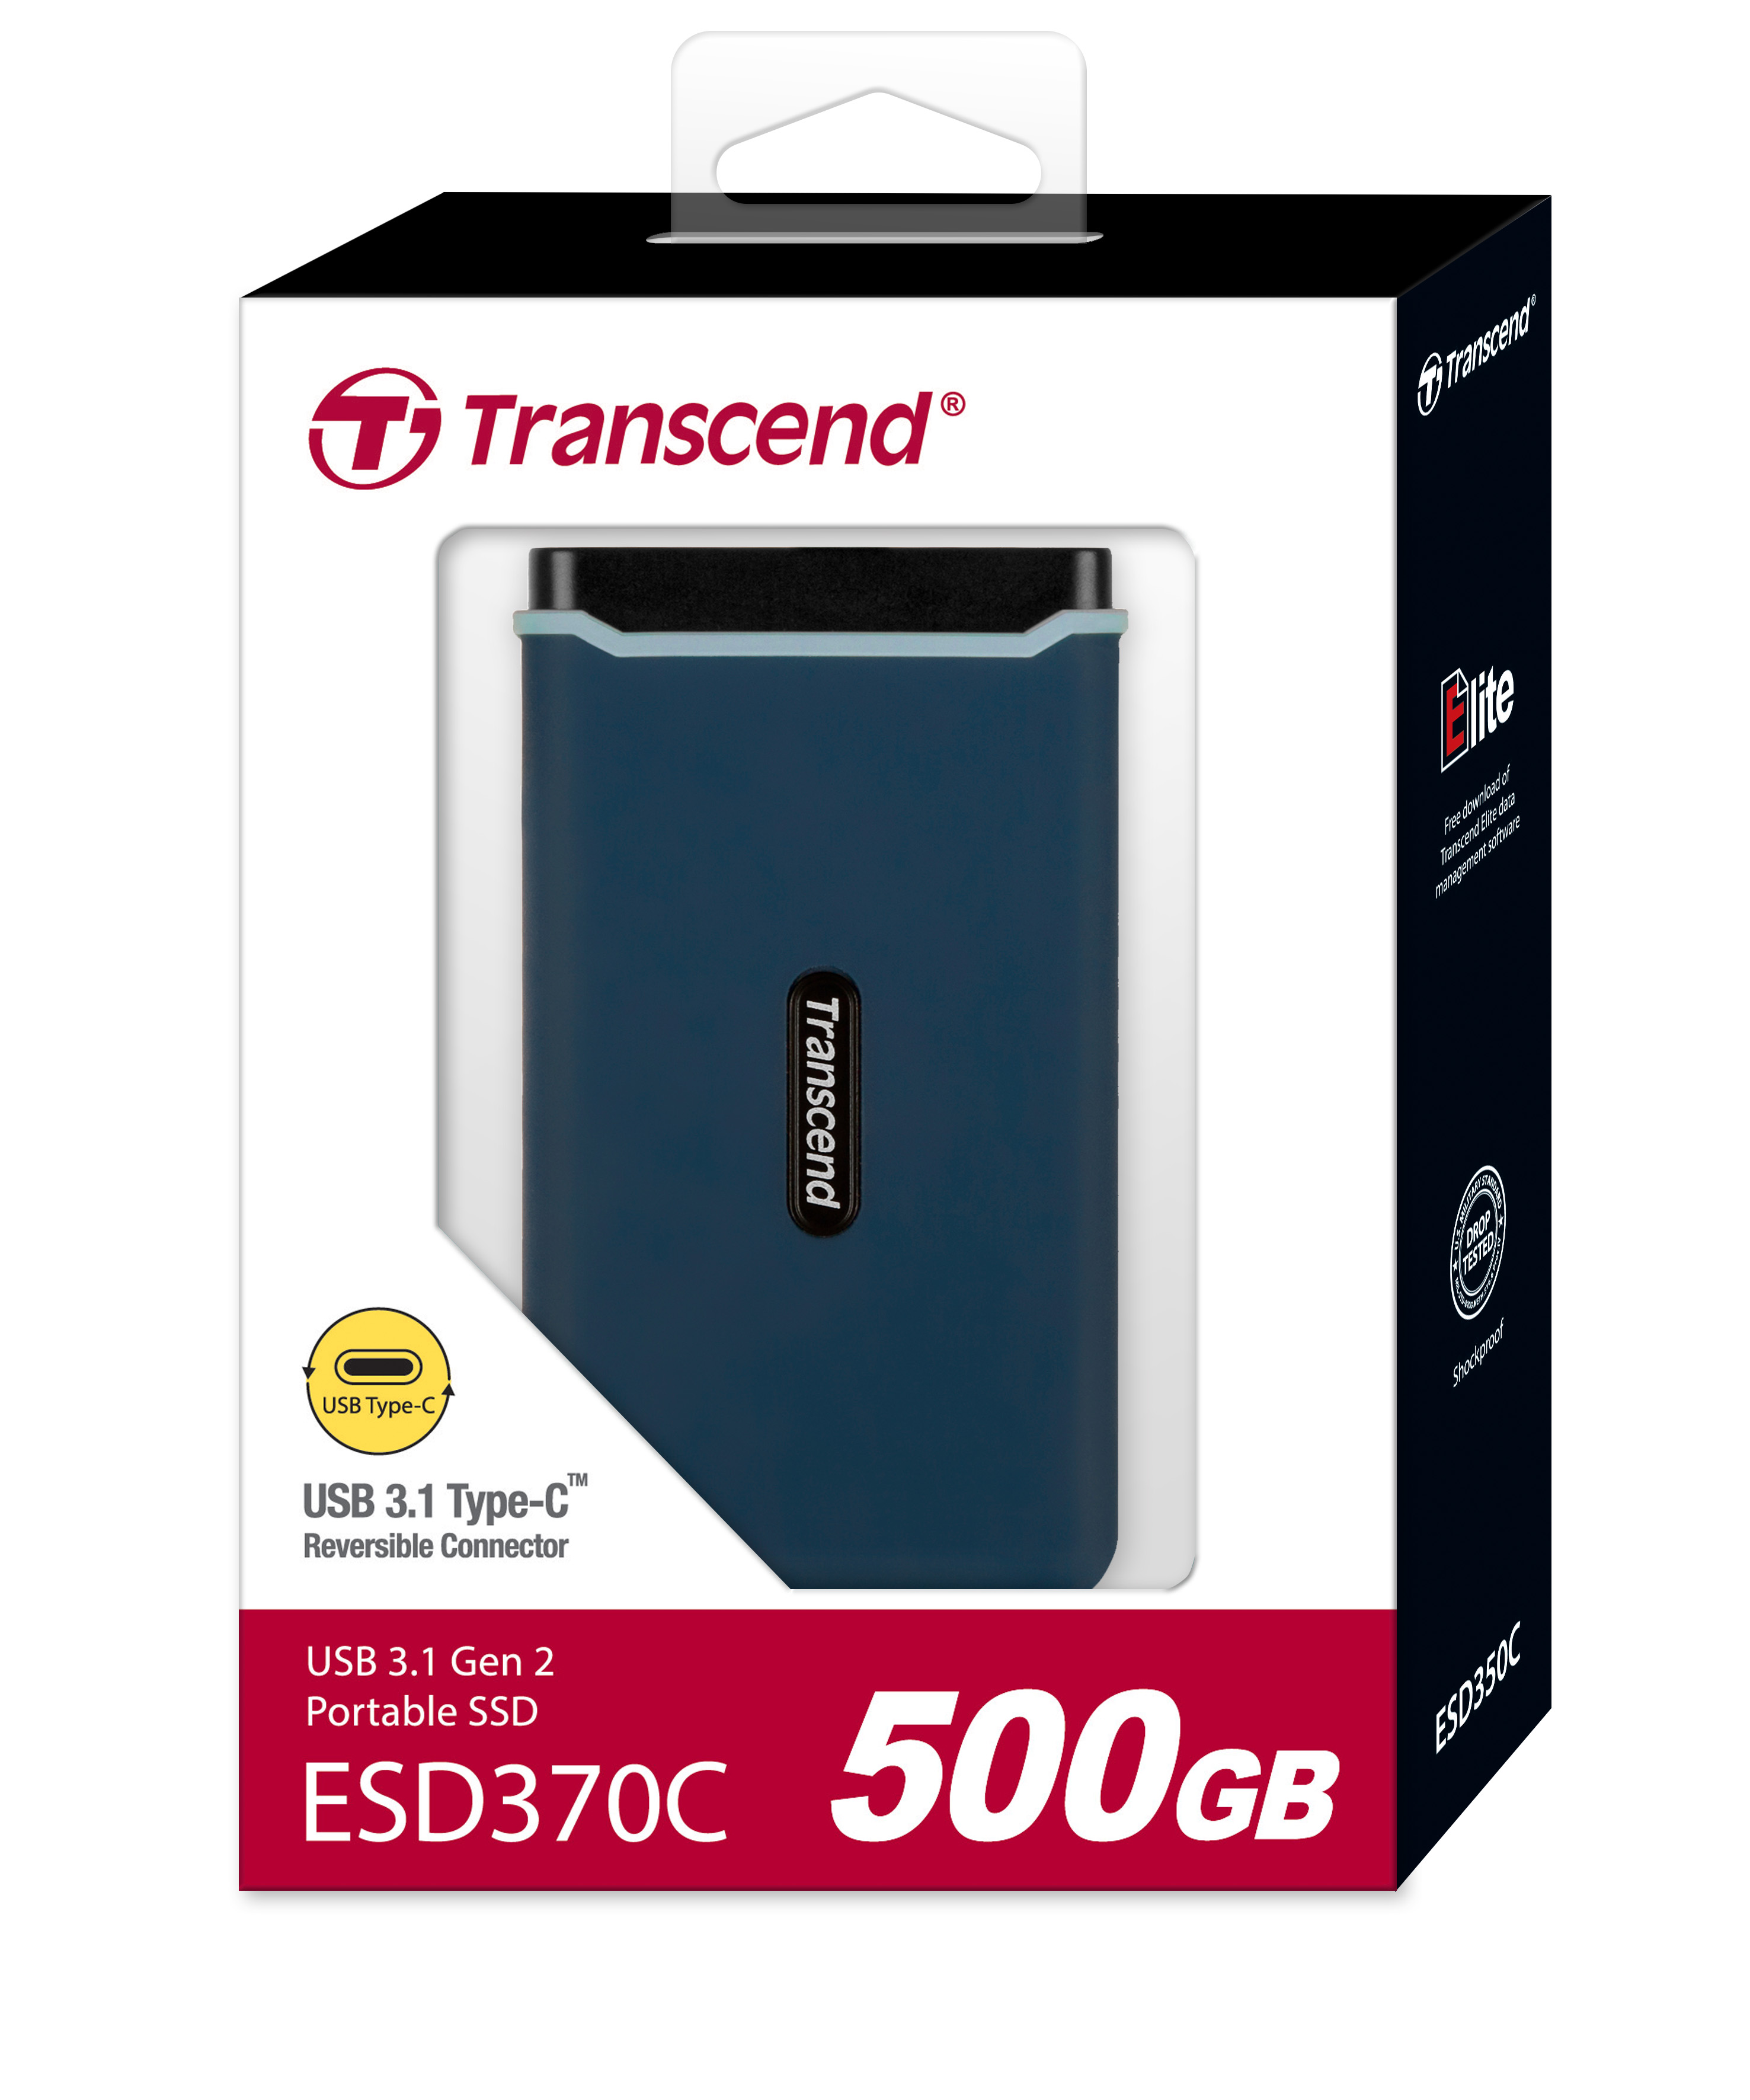 Transcend ESD370C Portable SSD